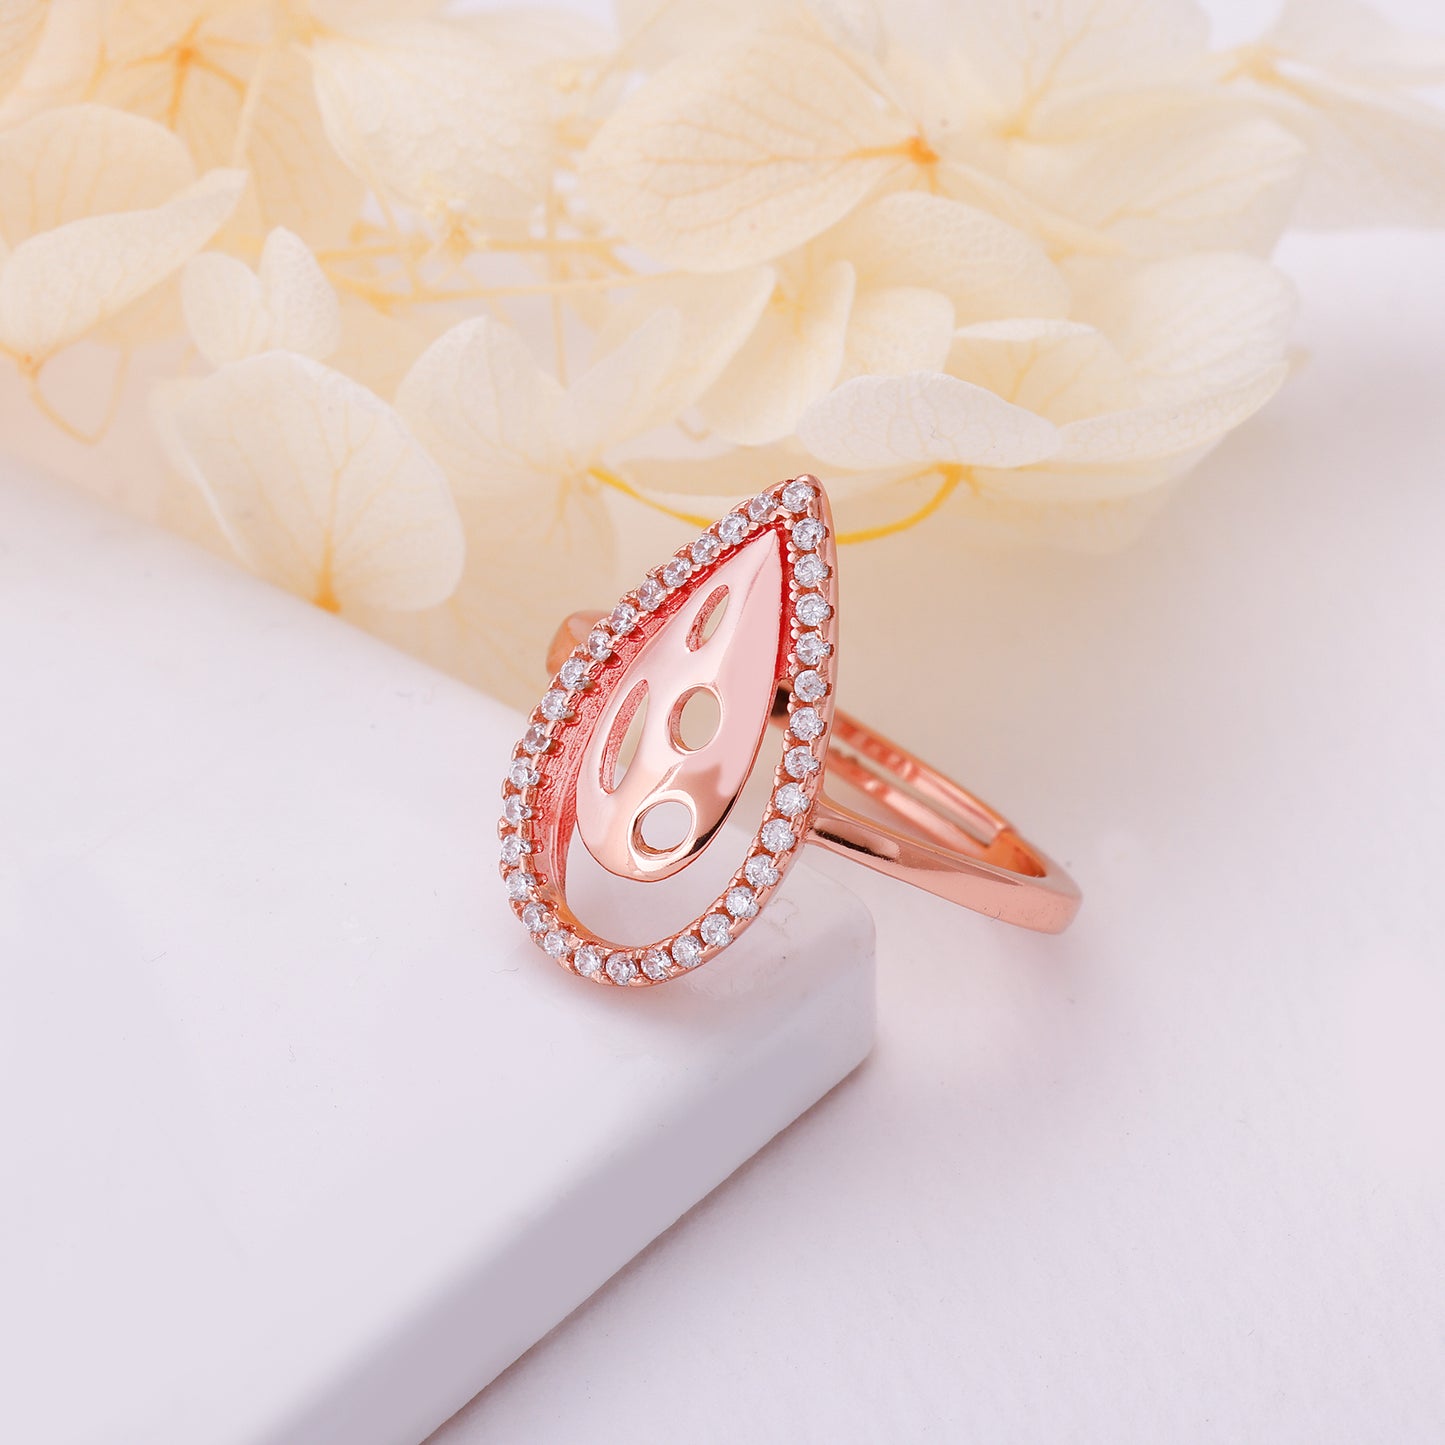 Rose Gold Intricate Teardrop Ring